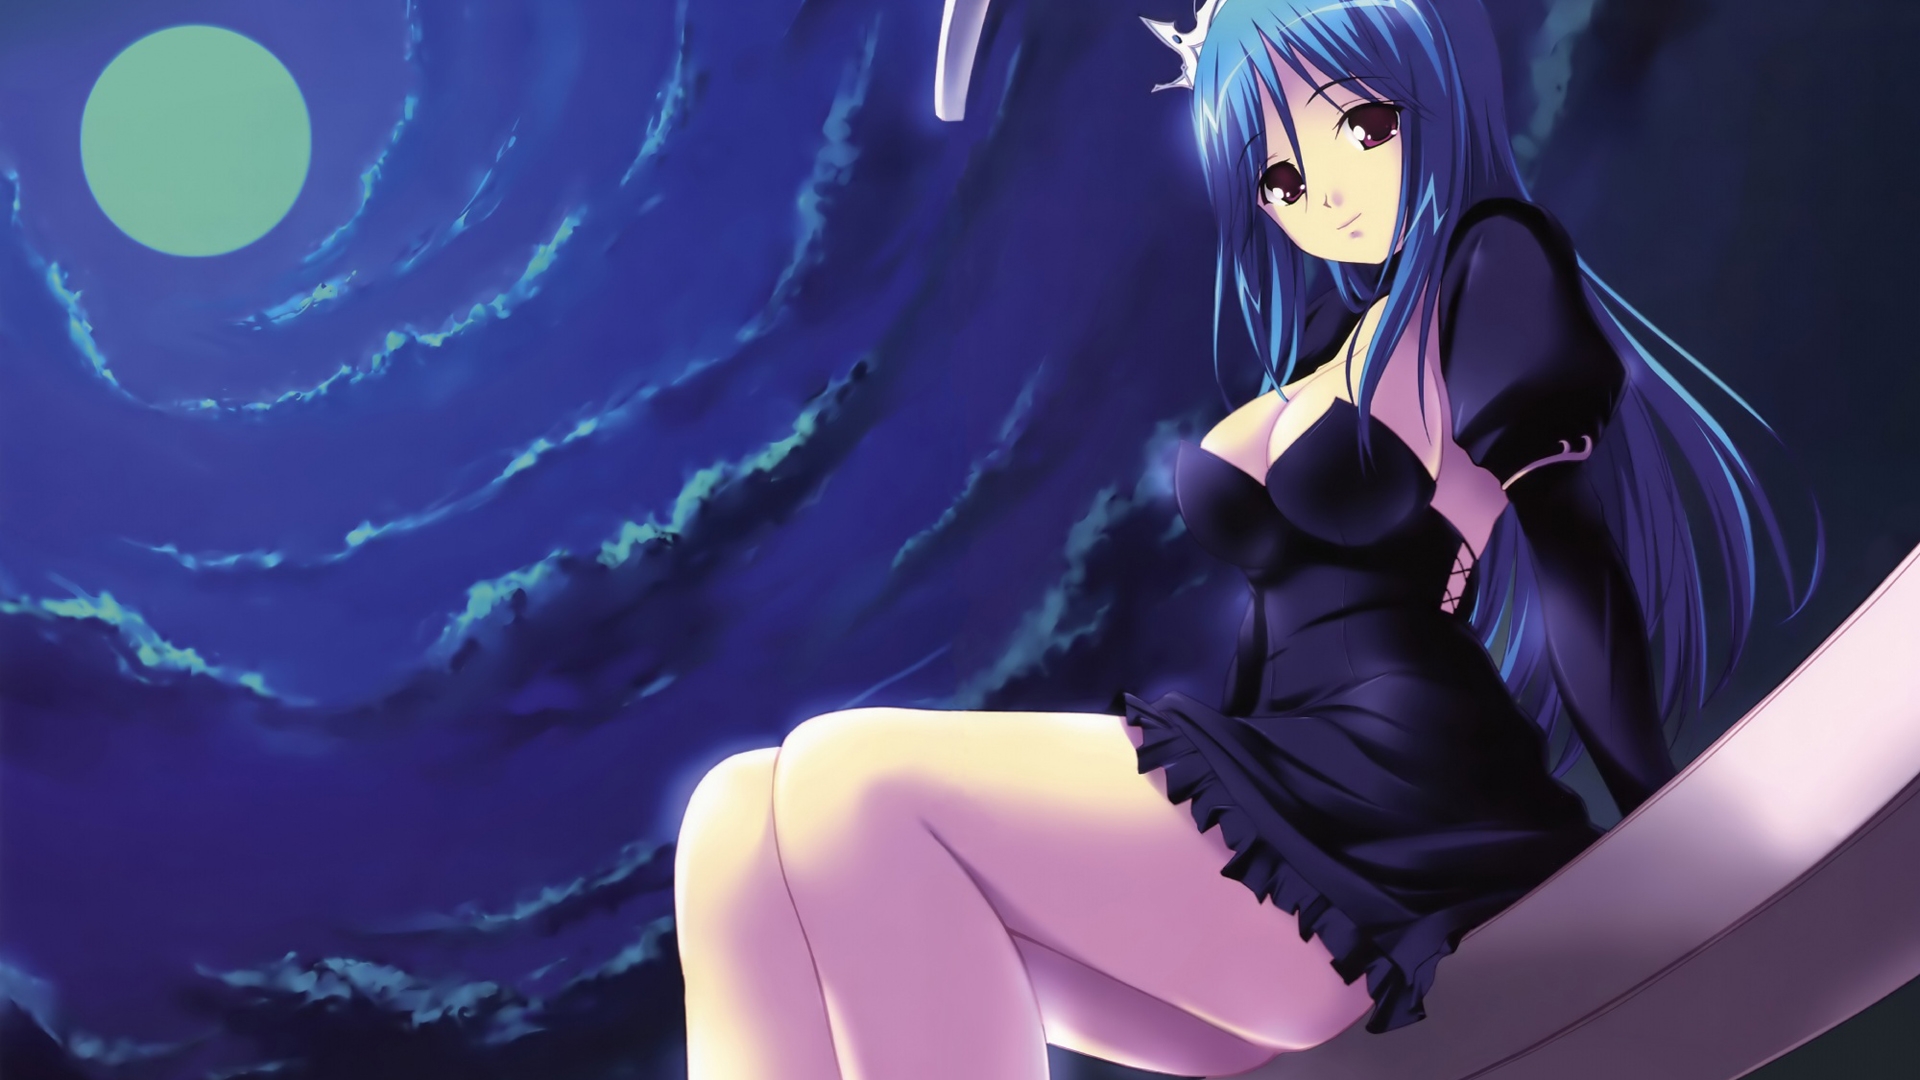 Anime Girl Blue Hair Wallpaper - wide 9